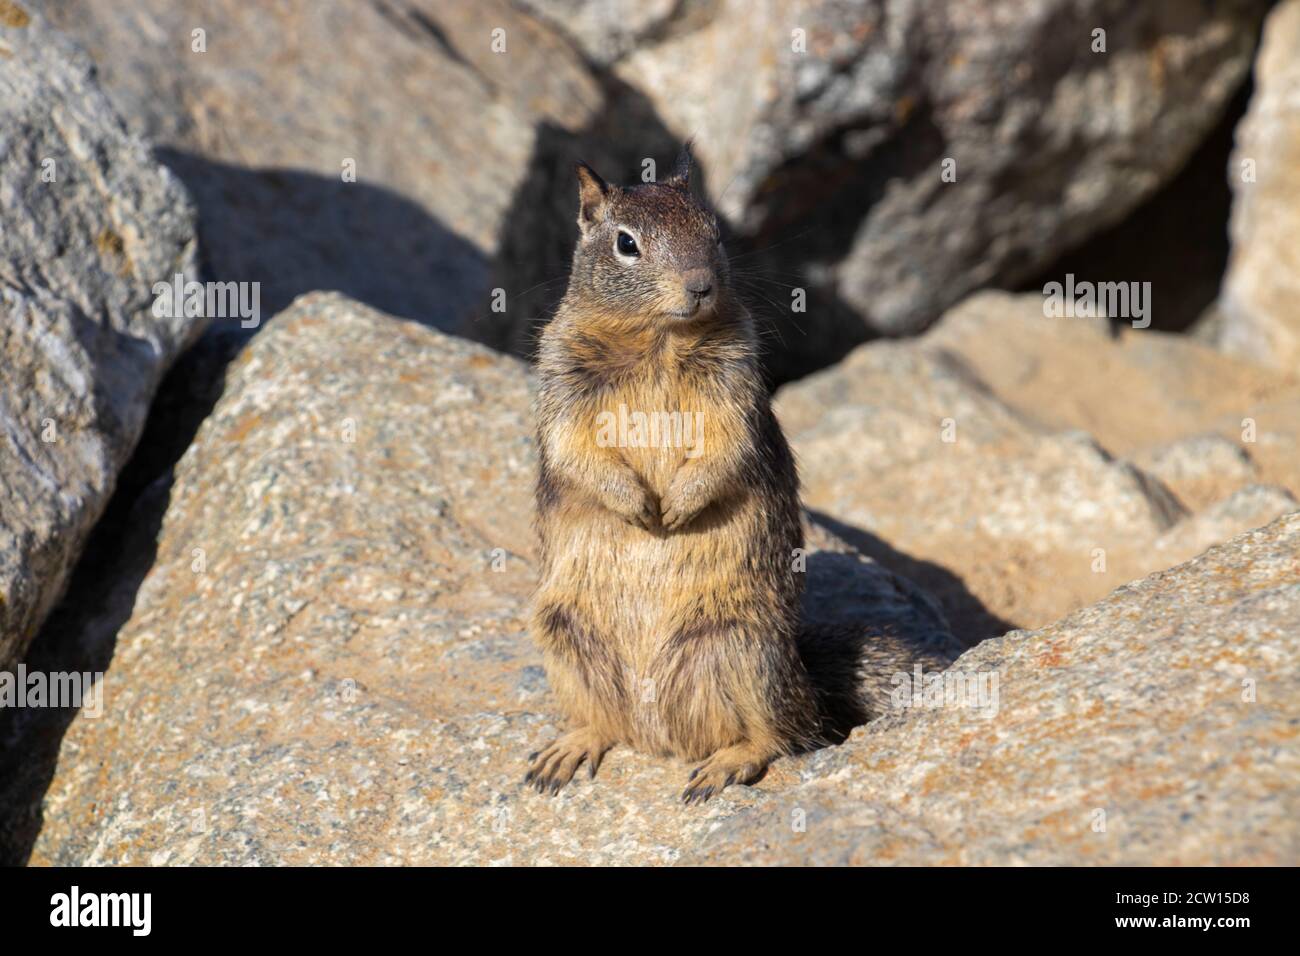 Uno scoiattolo da 17 Mile Drive Monterey, California. Vista ravvicinata di uno scoiattolo. Profondità di campo poco profonda. Foto di viaggio per la rivista di viaggi. Bird Rock, Foto Stock